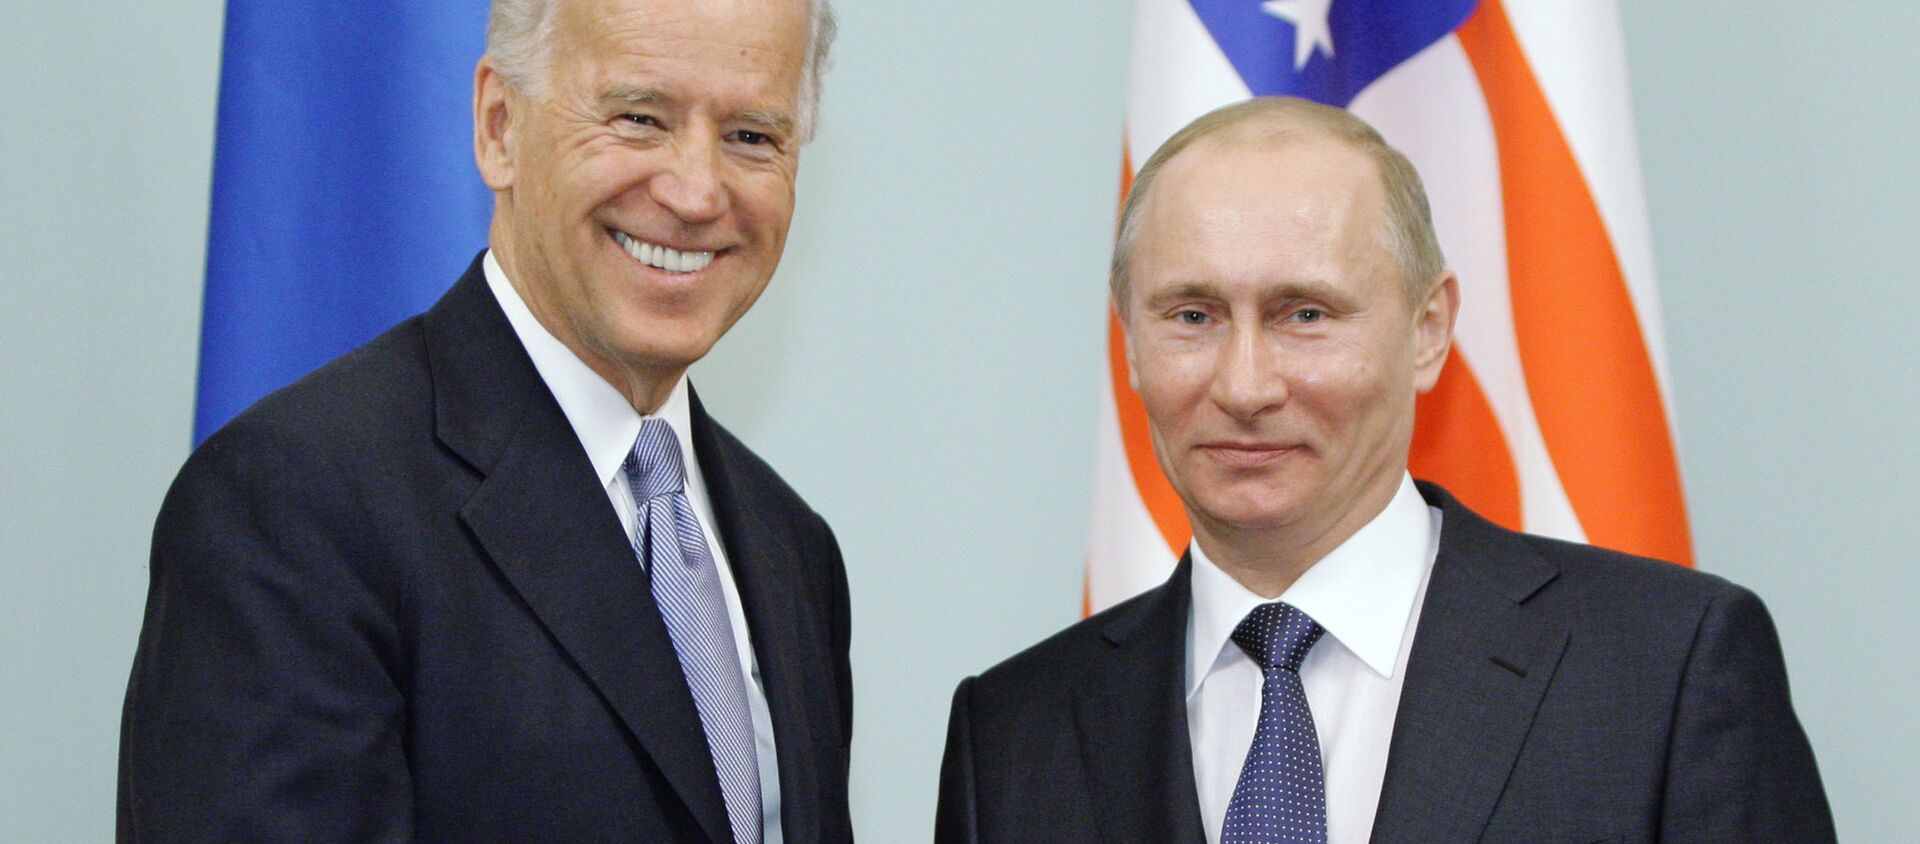 Cuộc gặp giữa thủ tướng Nga Vladimir Putin và phó tổng thống Hoa Kỳ Joe Biden, năm 2011  - Sputnik Việt Nam, 1920, 25.05.2021